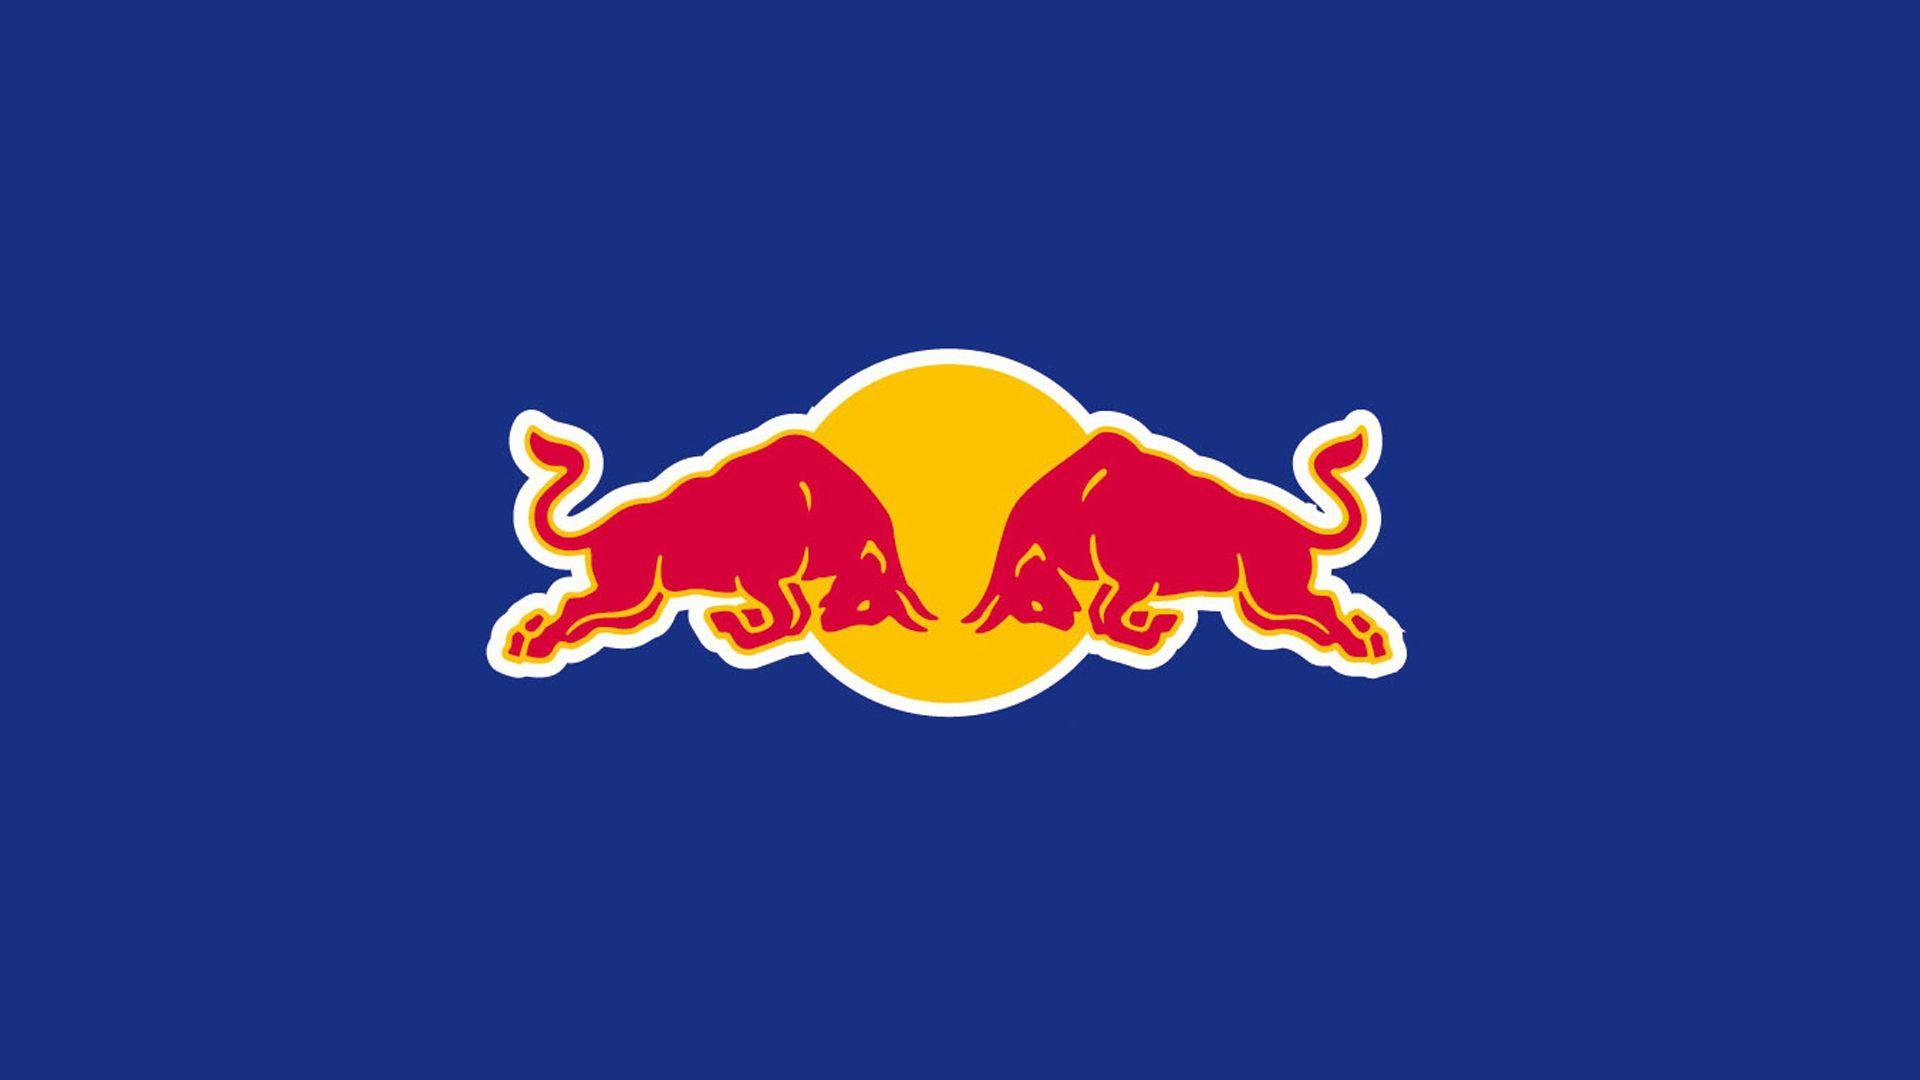 Red Bull Logo Picture redbull